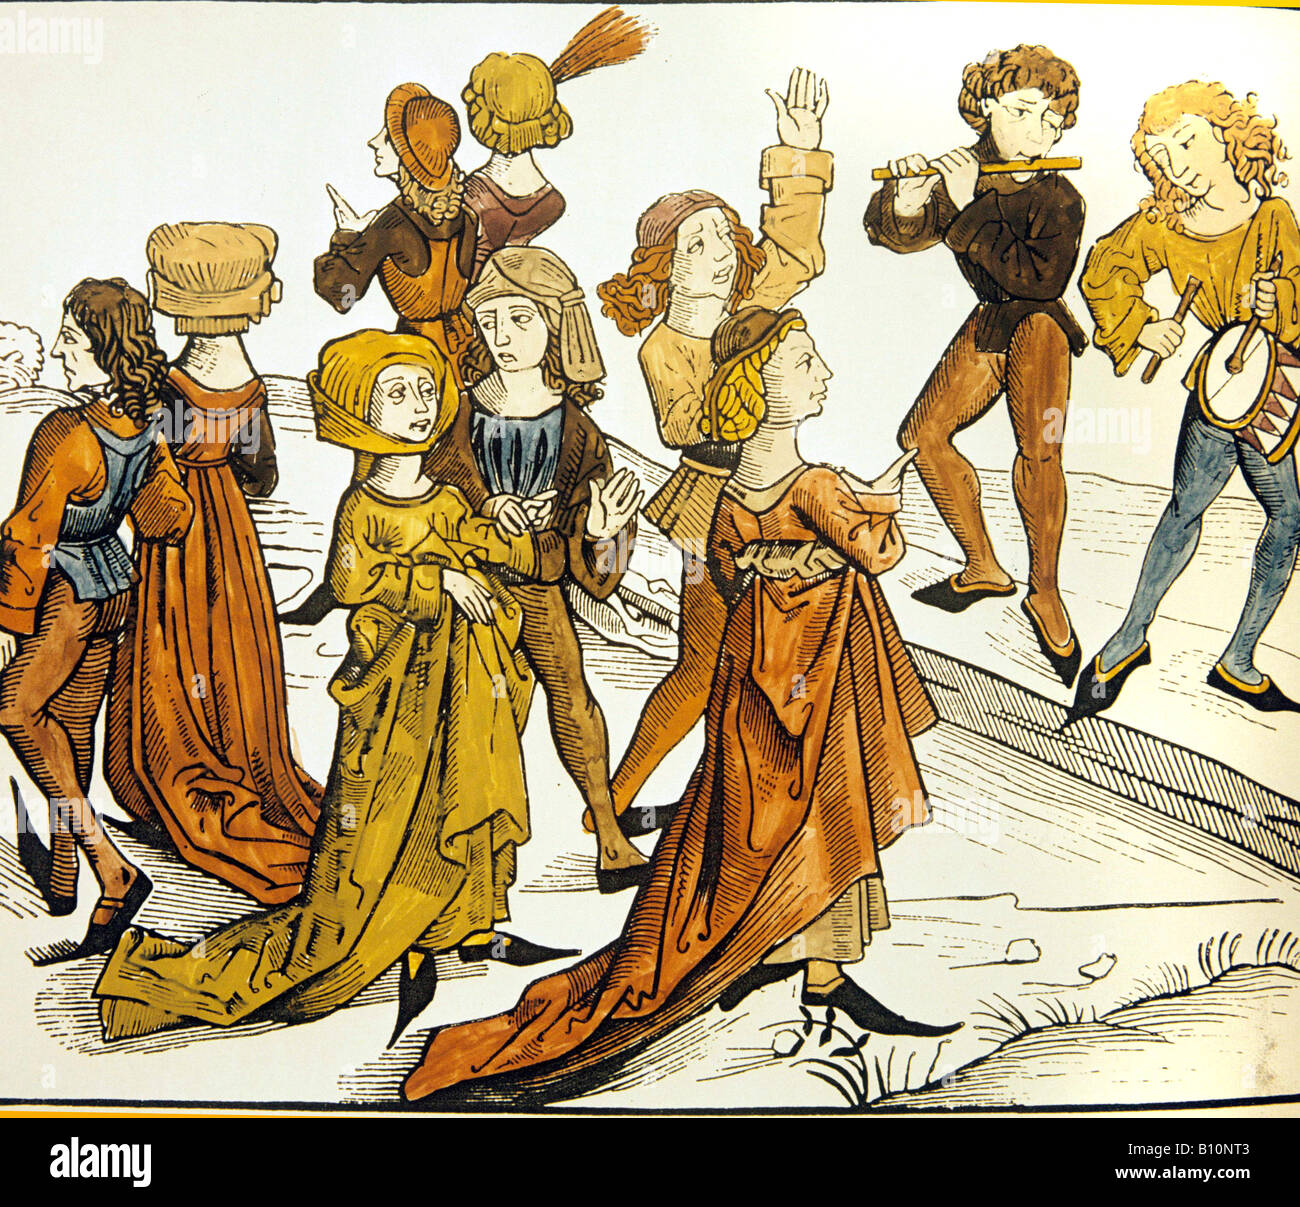 Danseurs dans la nuit de Noël de Liber Chronicorum Mundi. Nuremberg, 1493. Gravure sur bois. Banque D'Images